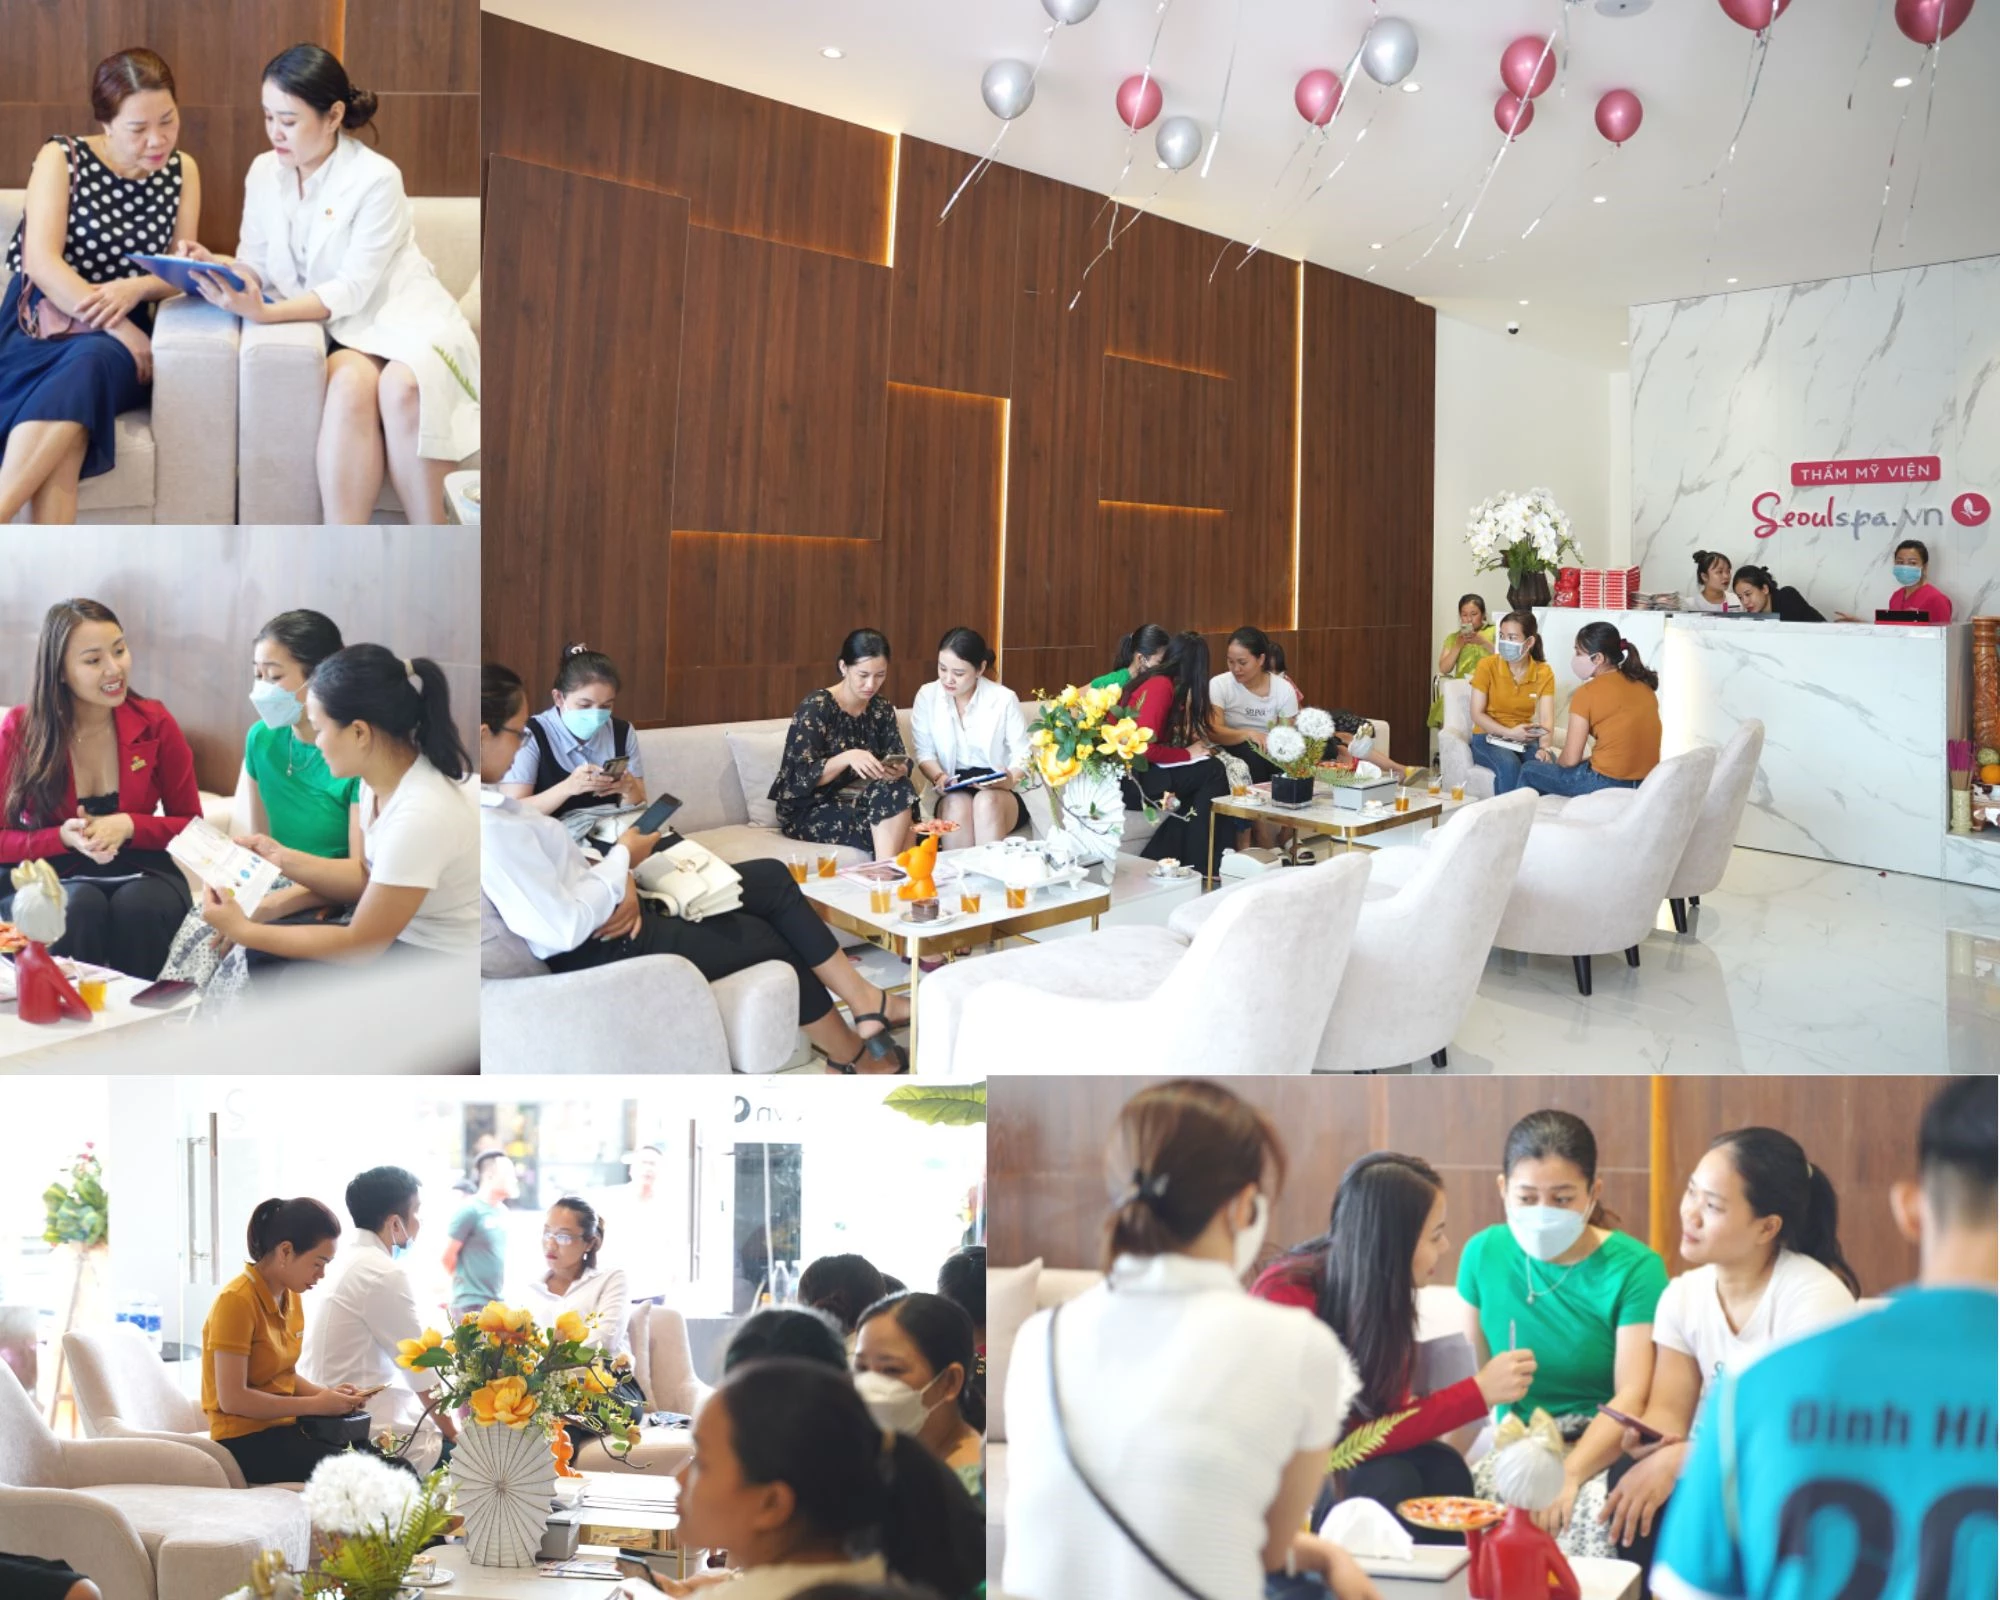 Rất đông khách hàng đã đến tham gia trải nghiệm các dịch vụ làm đẹp, chăm sóc da tại SeoulSpa.Vn Quảng Trị trong ngày khai trương